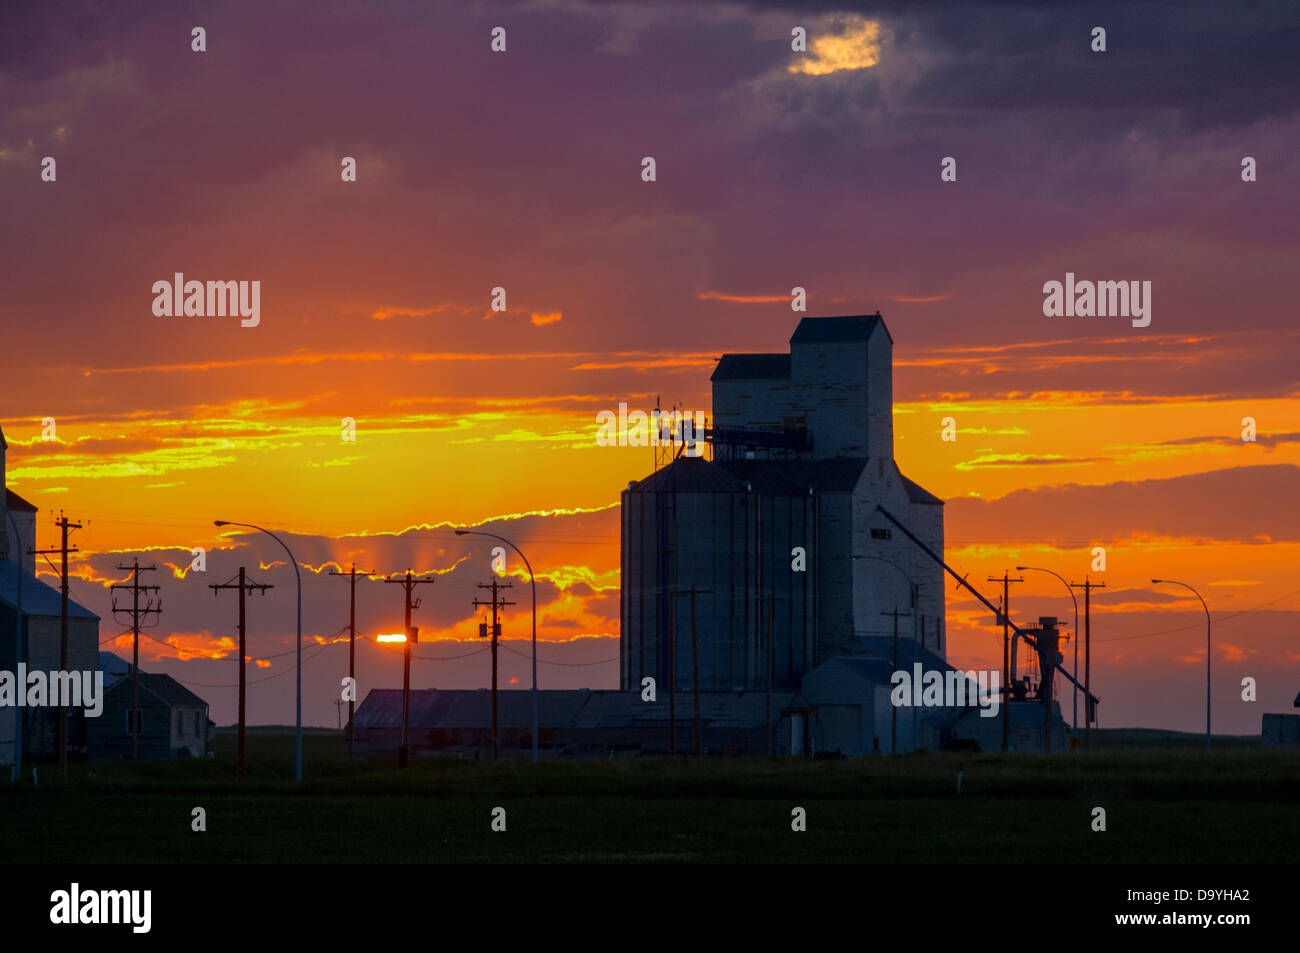 Grain elevators at sunset, Warner, Alberta, Canada Stock Photo